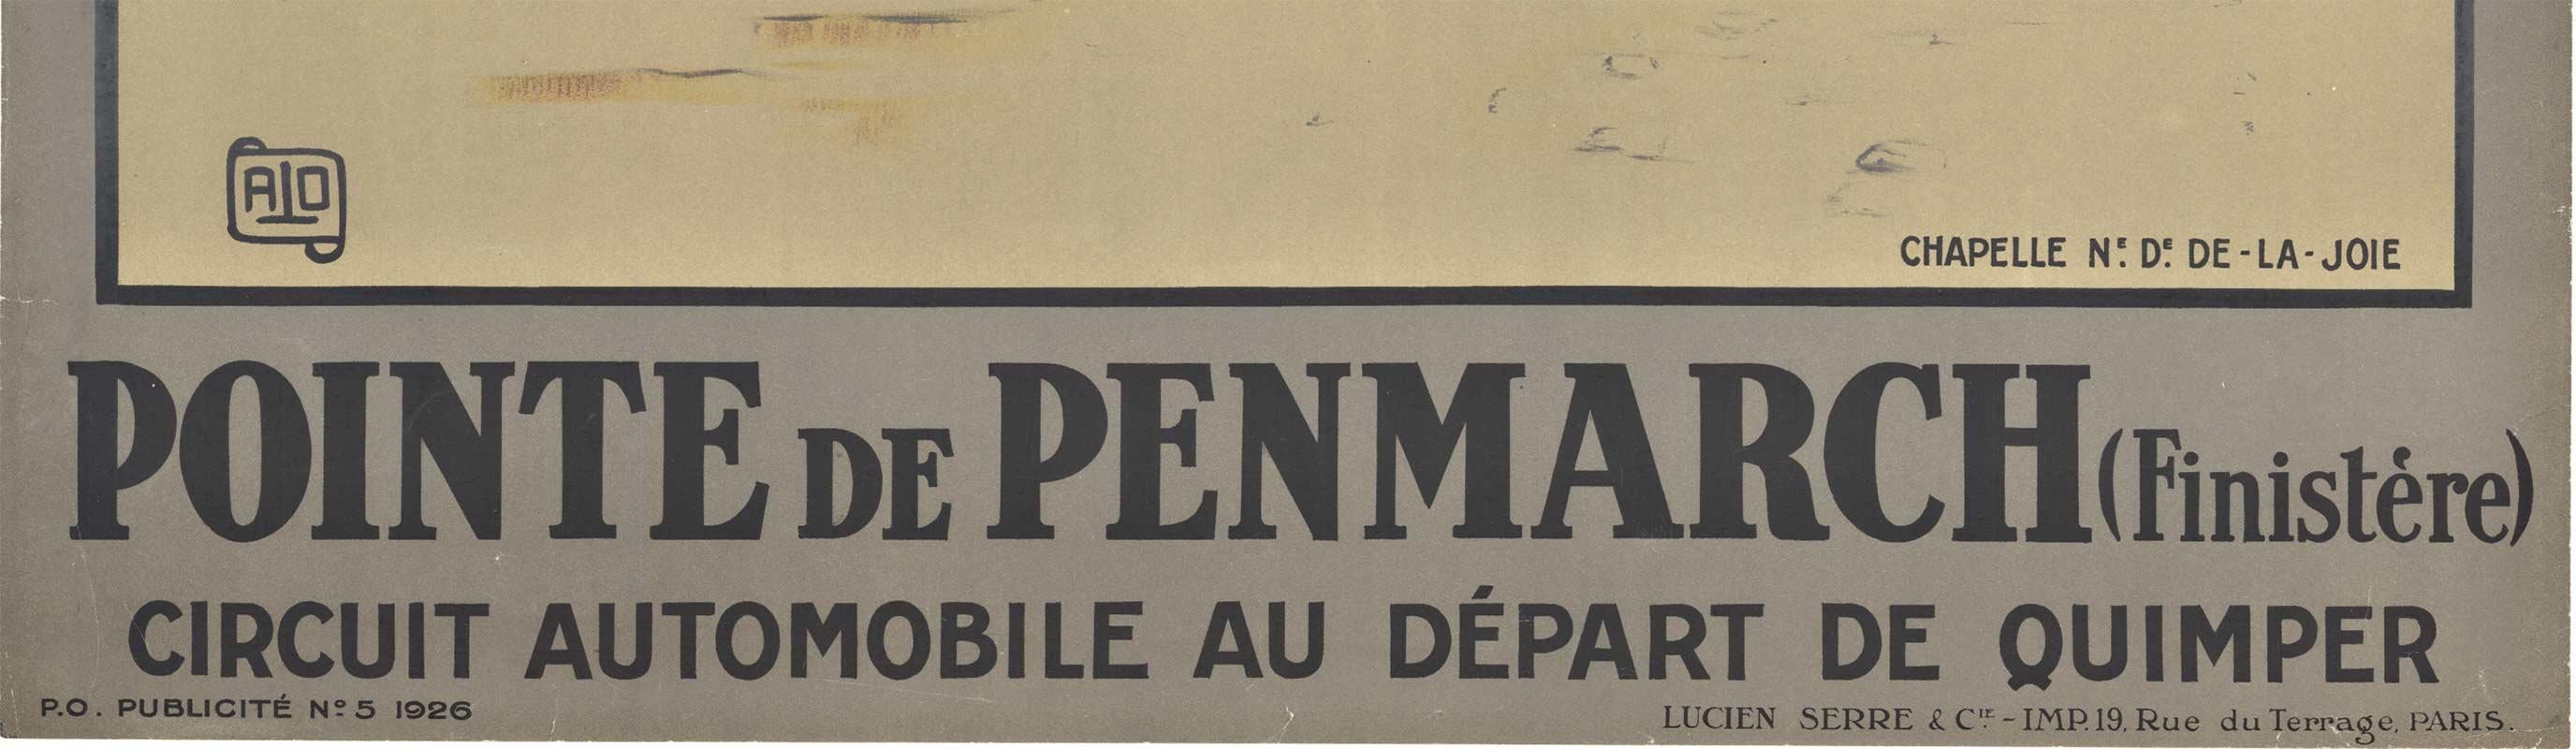 Affiche de voyage française vintage d'origine Pointe de Penmarch - Marron Figurative Print par ALO (Charles Jean Hallo)